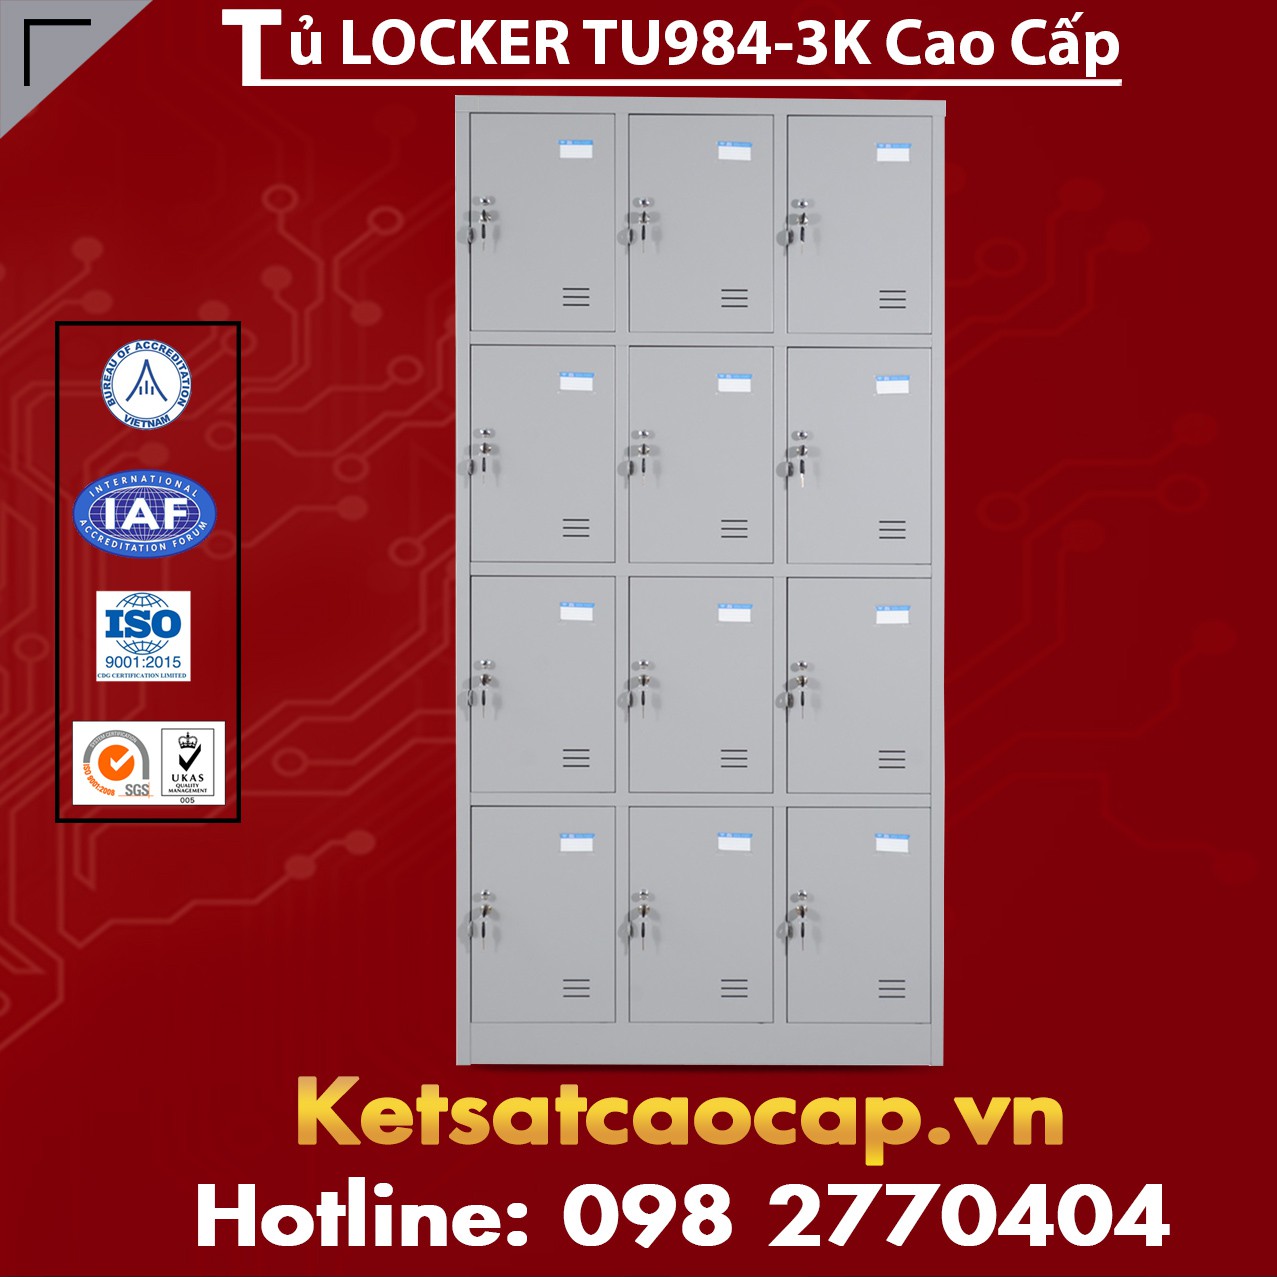 Tủ Locker TU984-3K